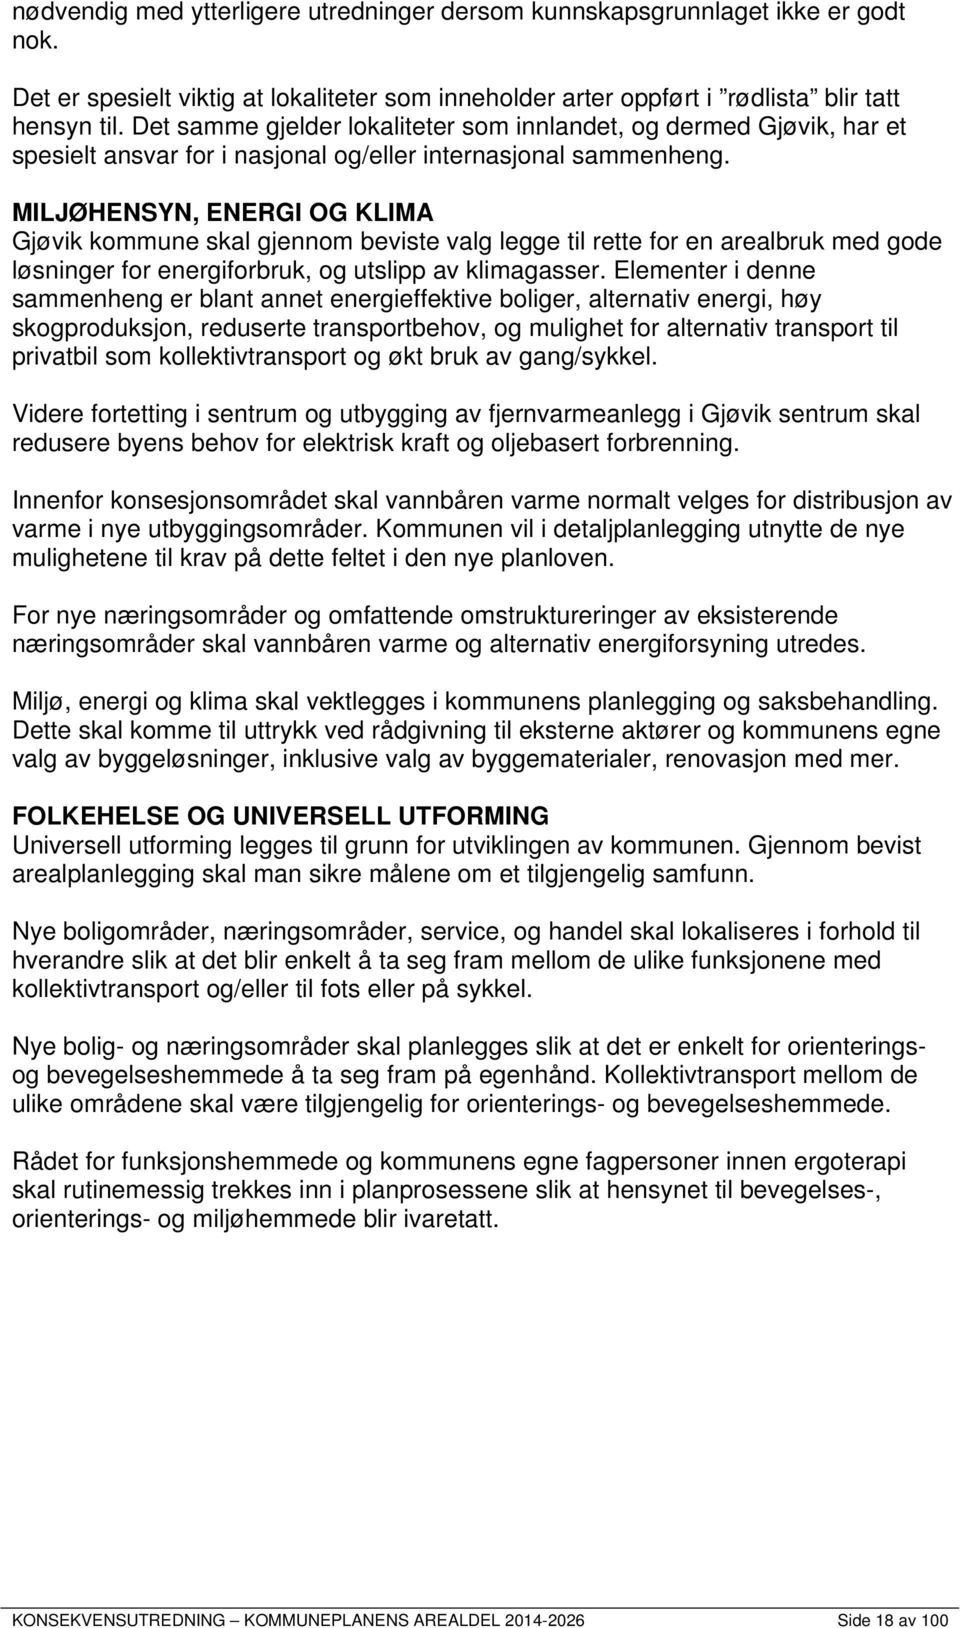 MILJØHENSYN, ENERGI OG KLIMA Gjøvik kommune skal gjennom beviste valg legge til rette for en arealbruk med gode løsninger for energiforbruk, og utslipp av klimagasser.